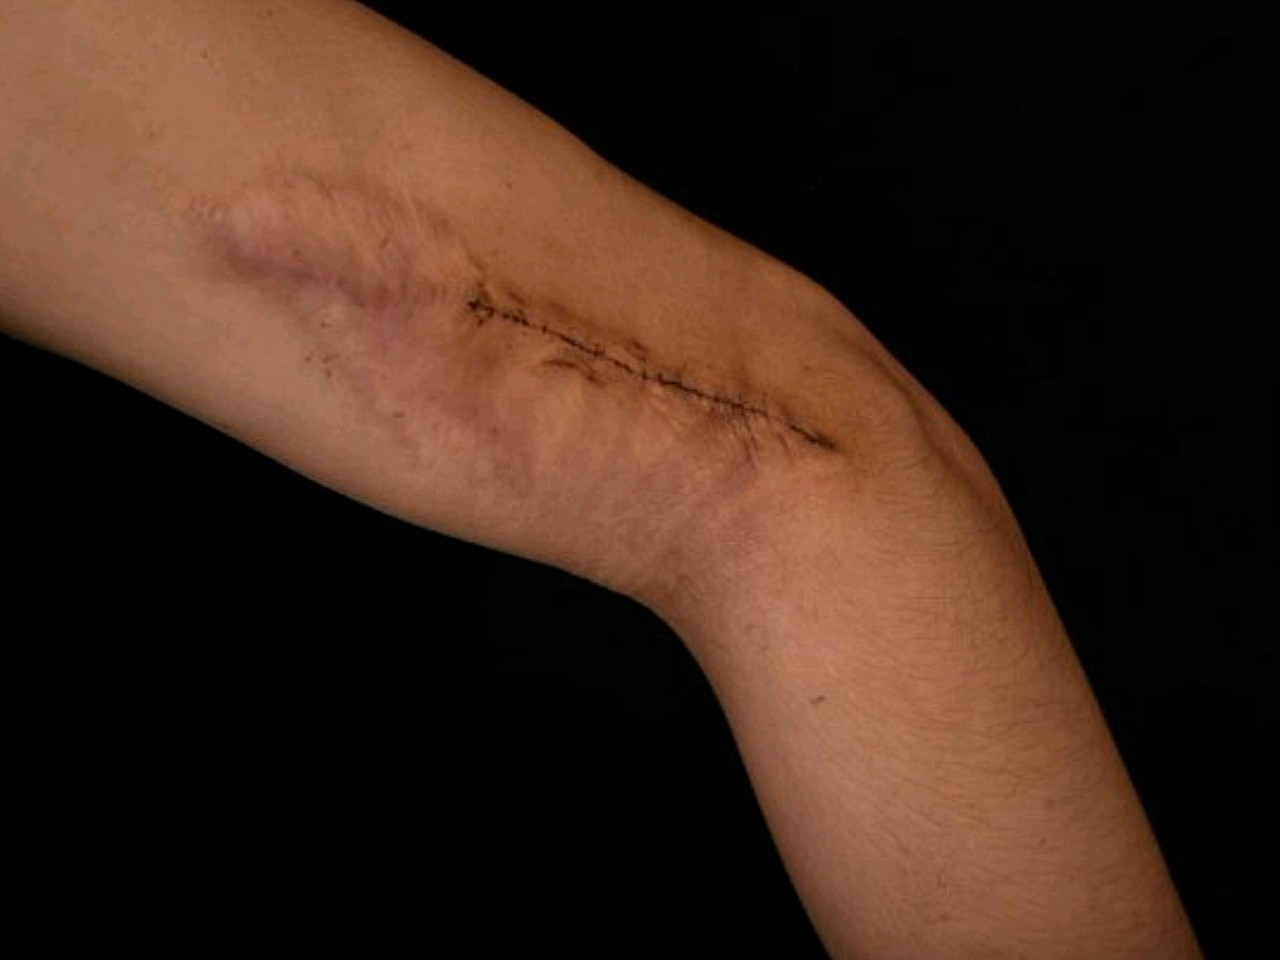 这是手臂缝针后留下的一道疤痕,挺难看的.夏天到了也